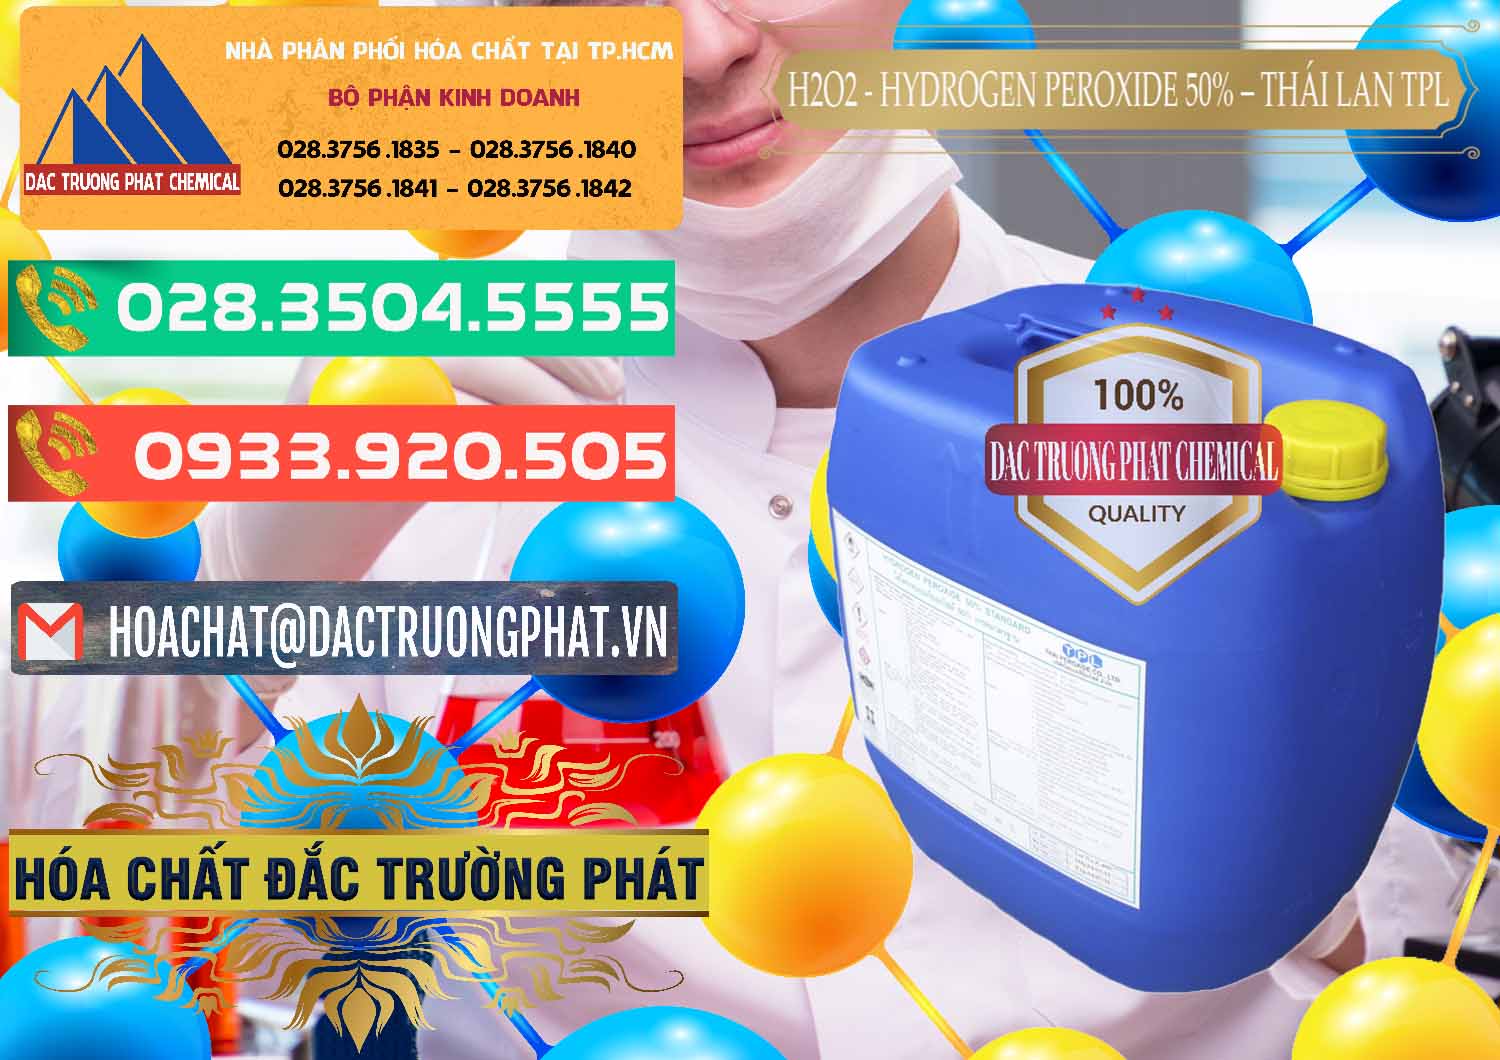 Cty phân phối ( bán ) H2O2 - Hydrogen Peroxide 50% Thái Lan TPL - 0076 - Nơi chuyên phân phối _ cung ứng hóa chất tại TP.HCM - congtyhoachat.com.vn